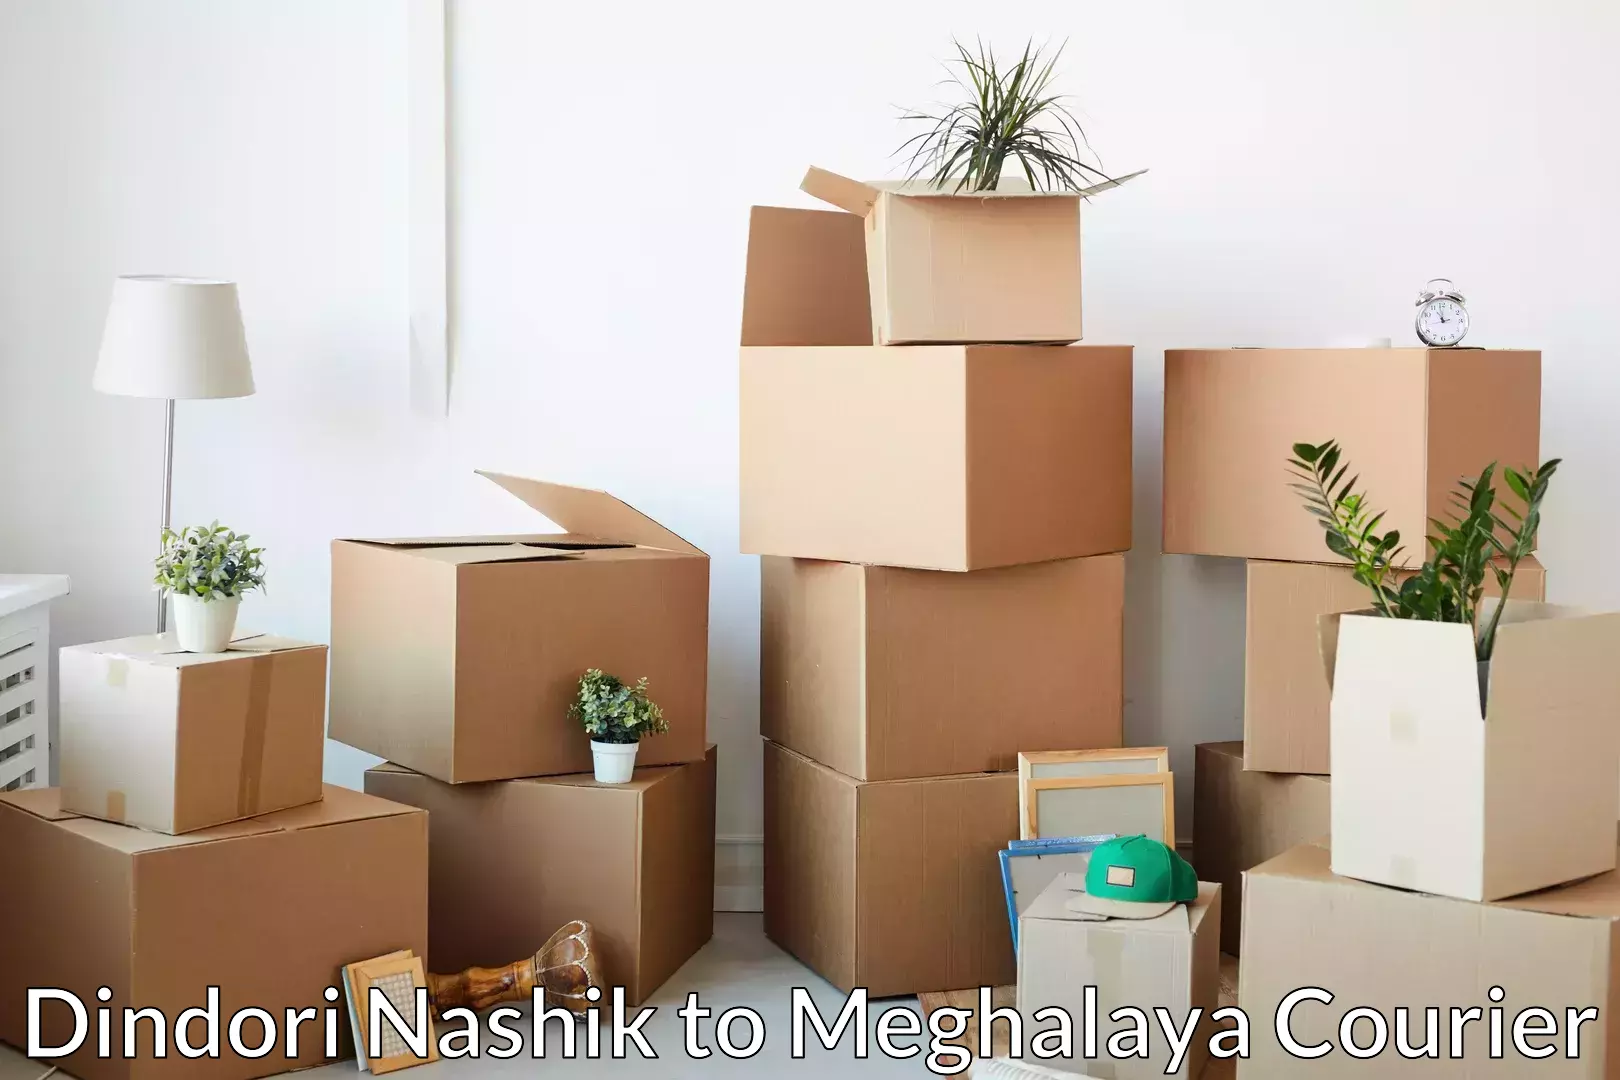 Household moving experts Dindori Nashik to Meghalaya